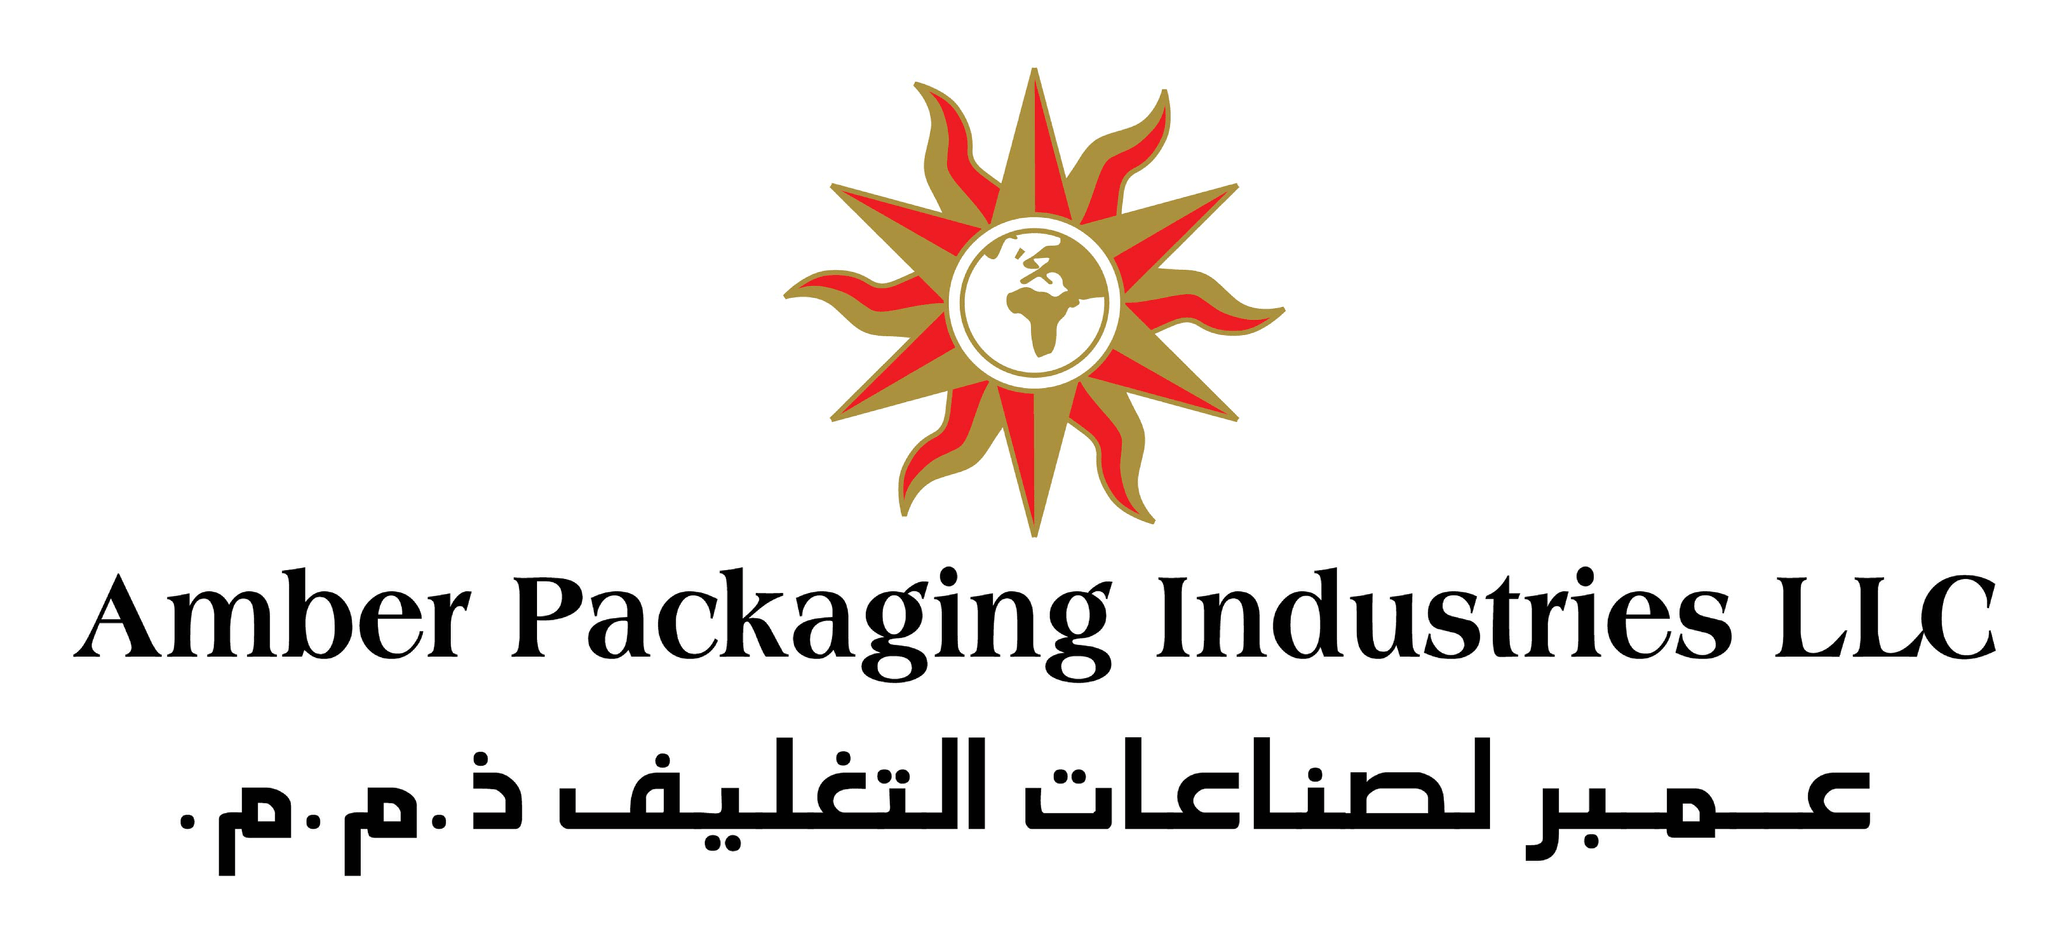 Amber packaging Industries llc